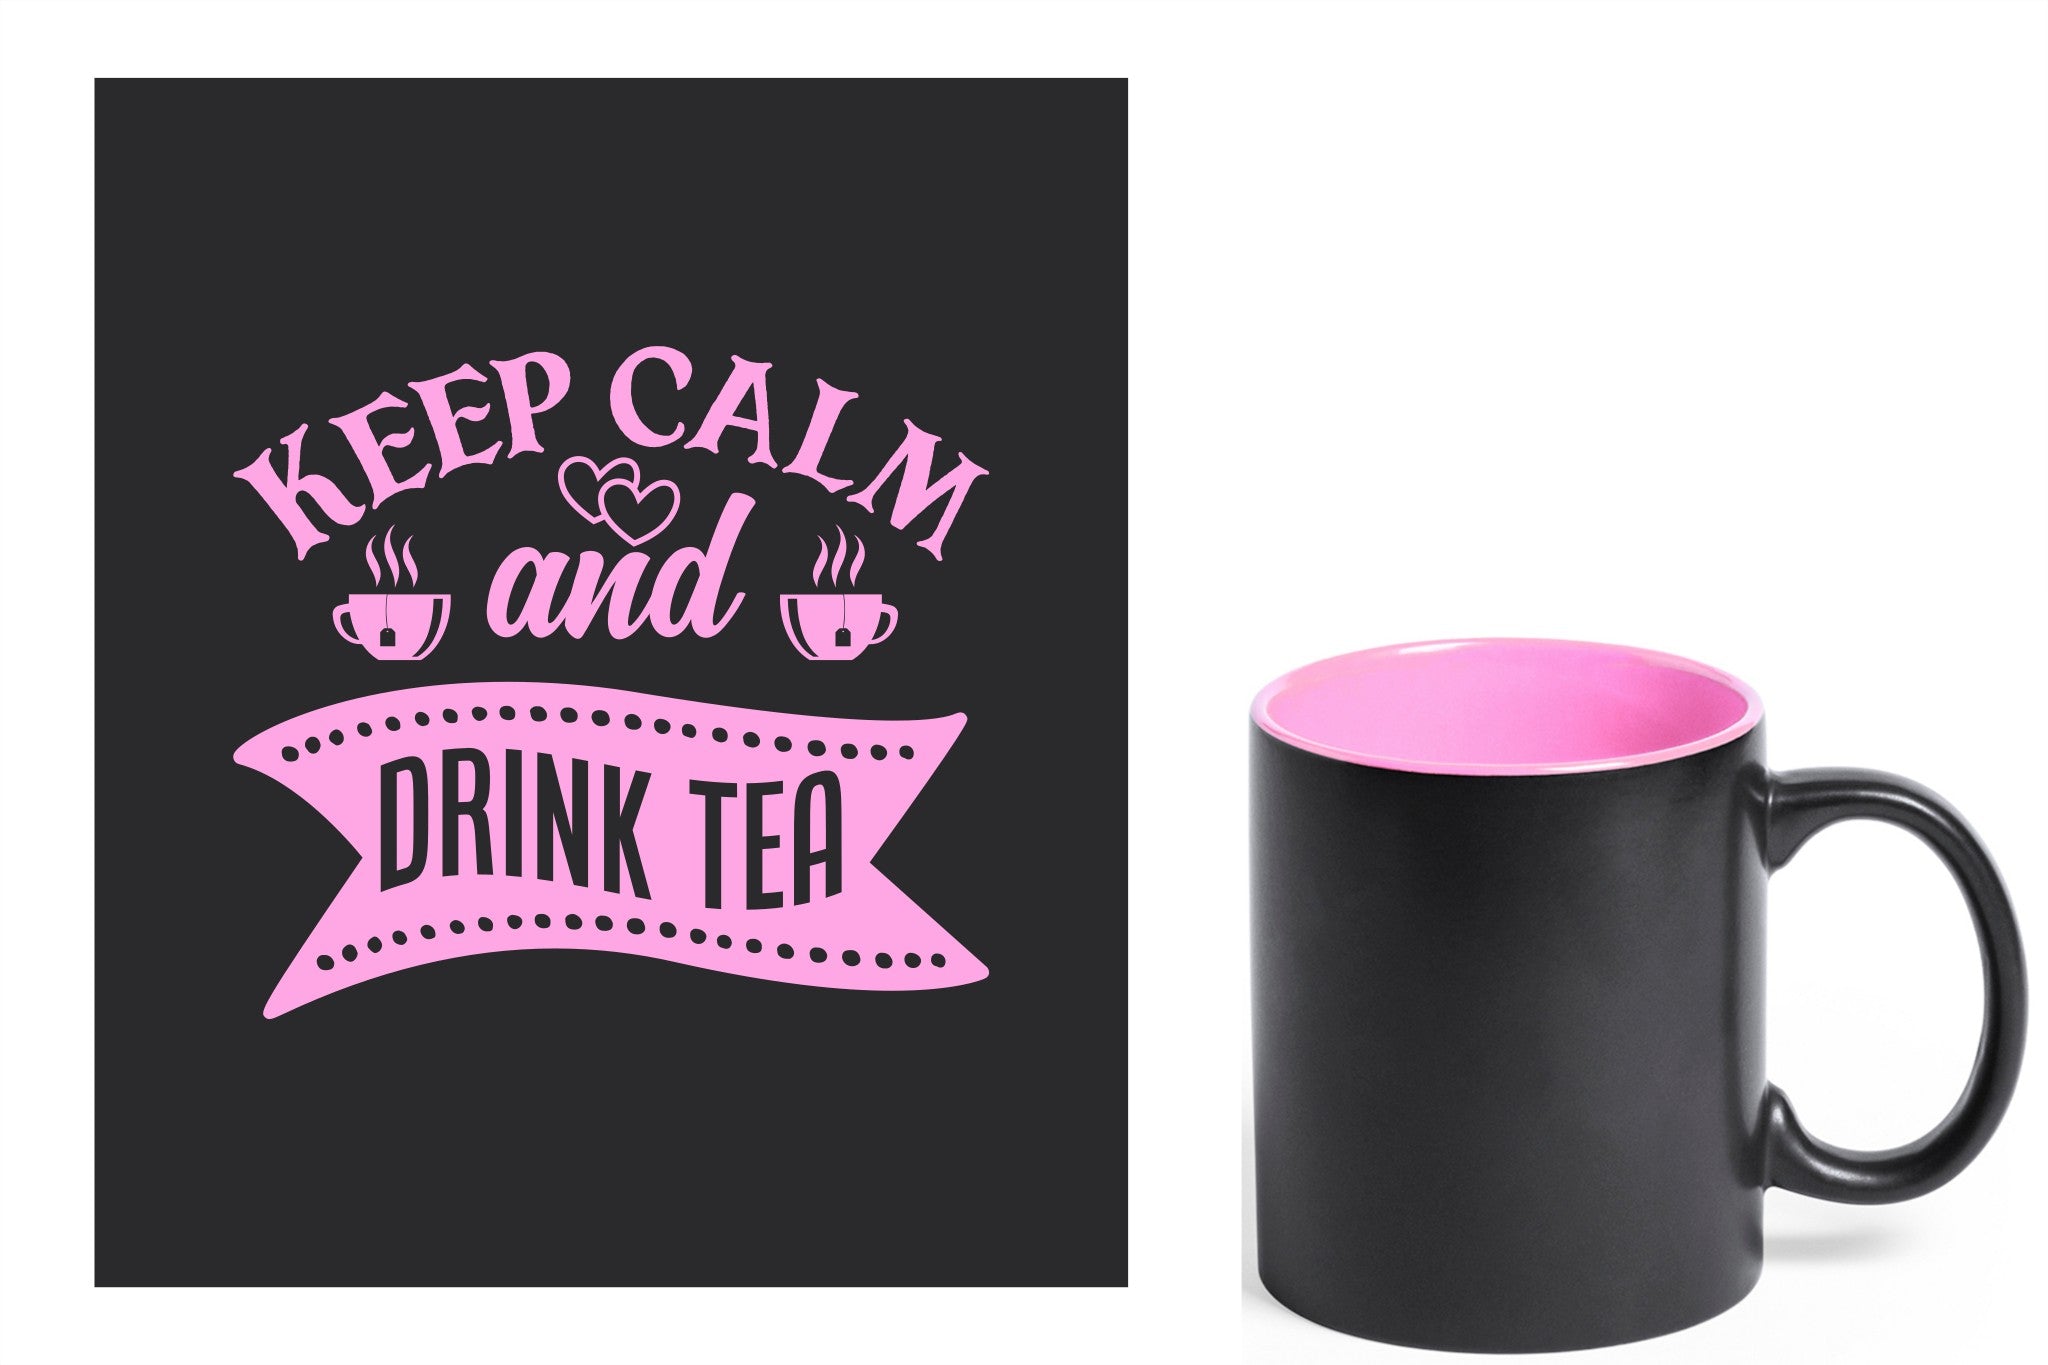 zwarte keramische mok met roze gravure  'Keep calm and drink tea'.